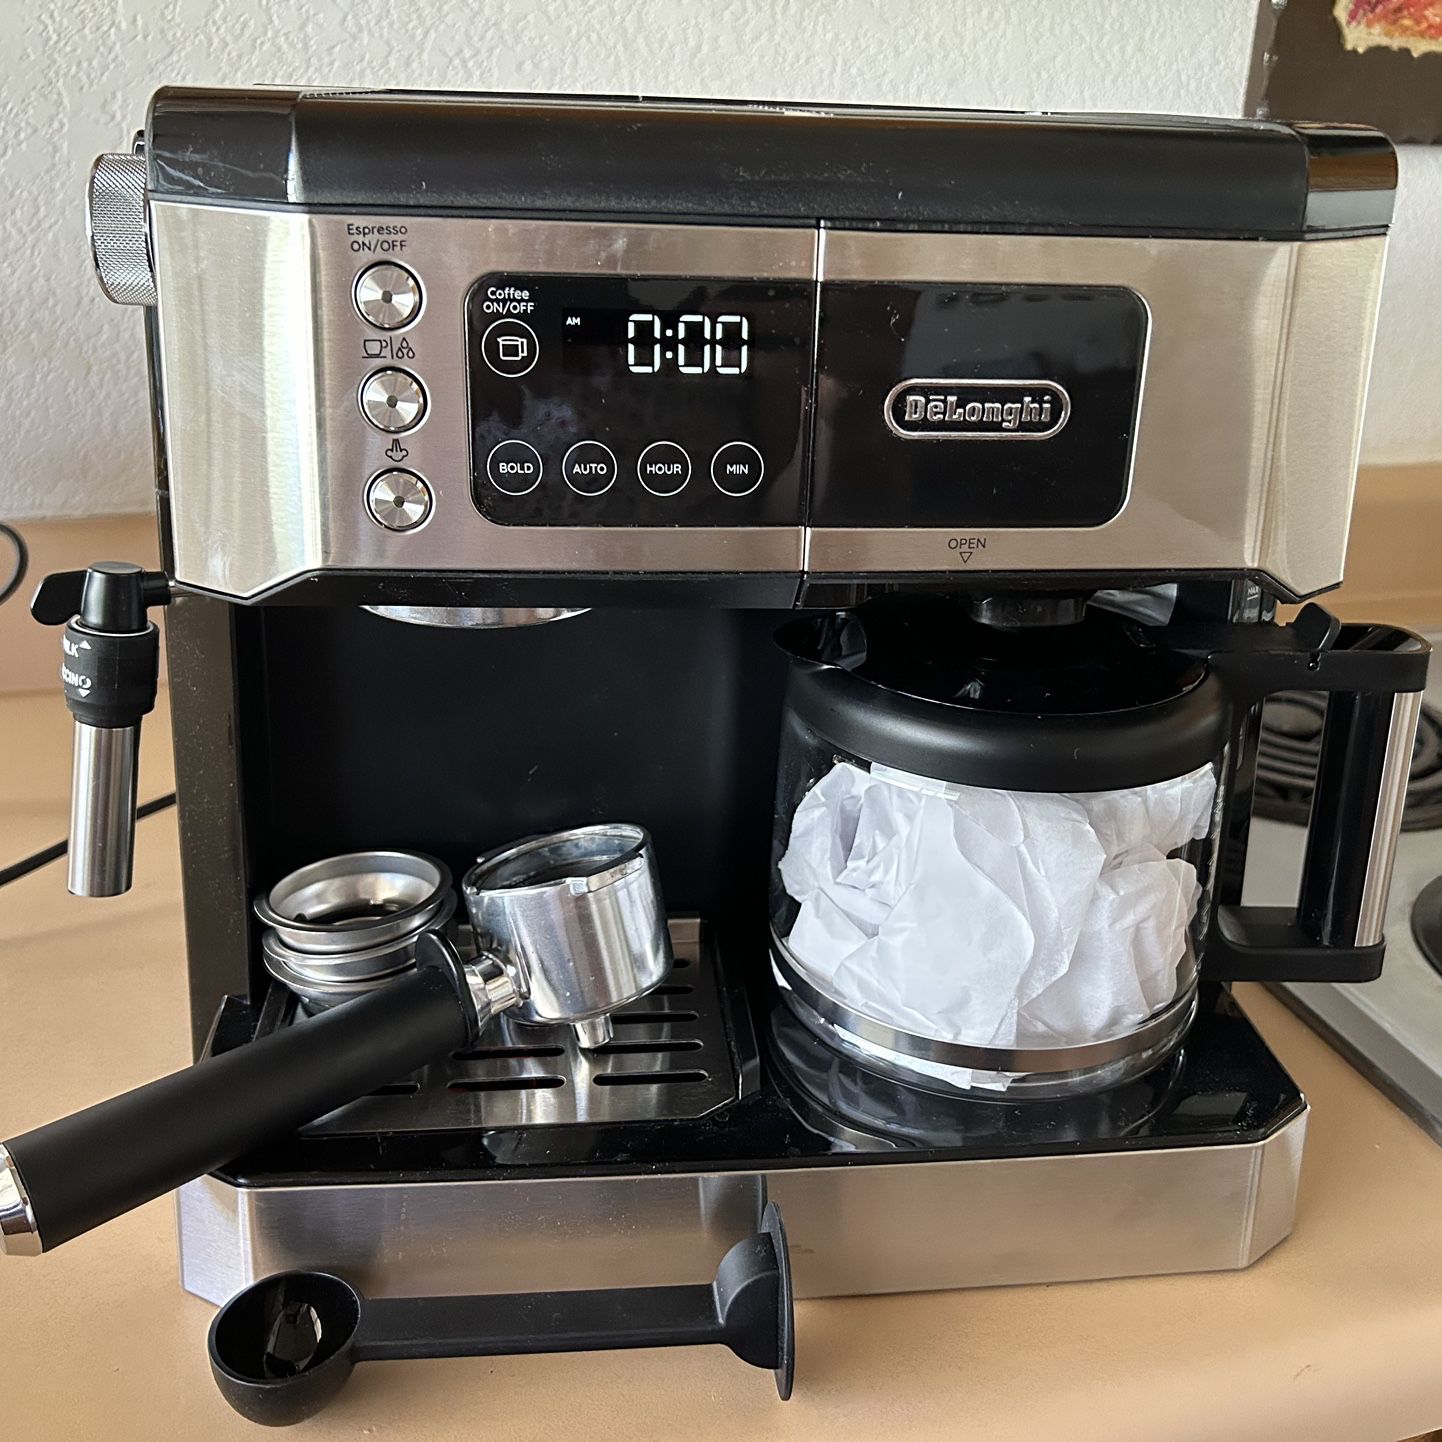 Delonghi Espresso Coffee Maker Combo for Sale in Phoenix, AZ - OfferUp